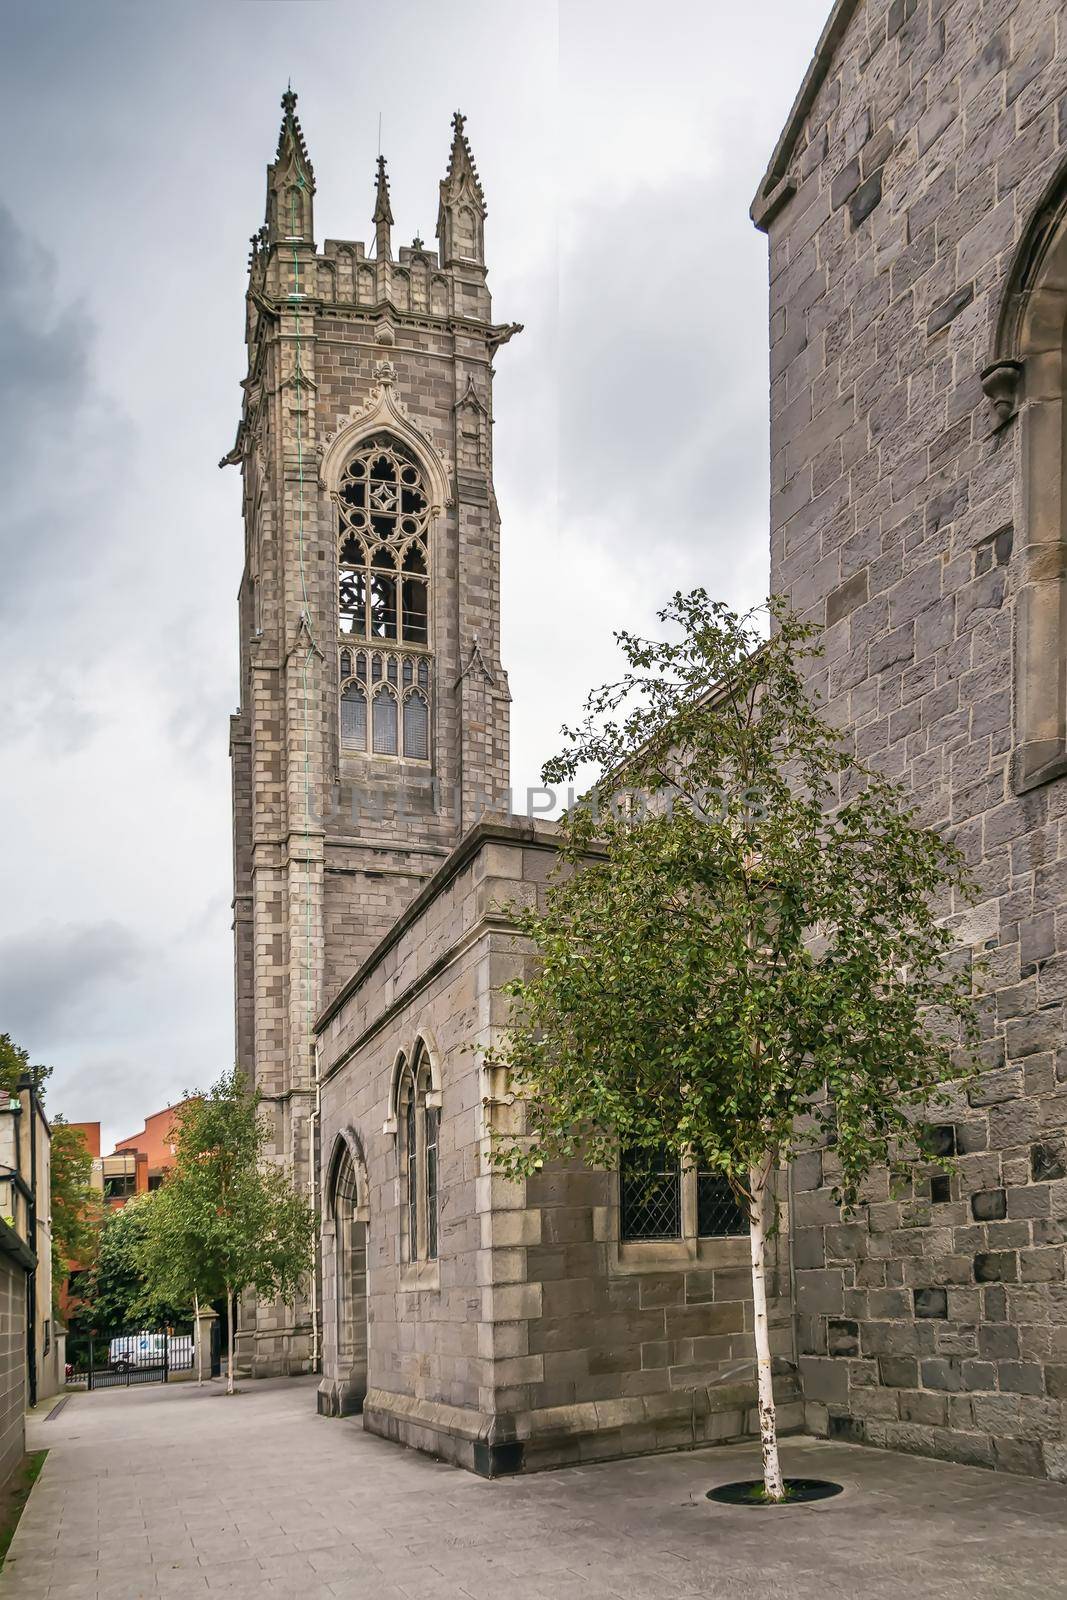 St. Mary's Church Haddington Raod in Dublin, Ireland